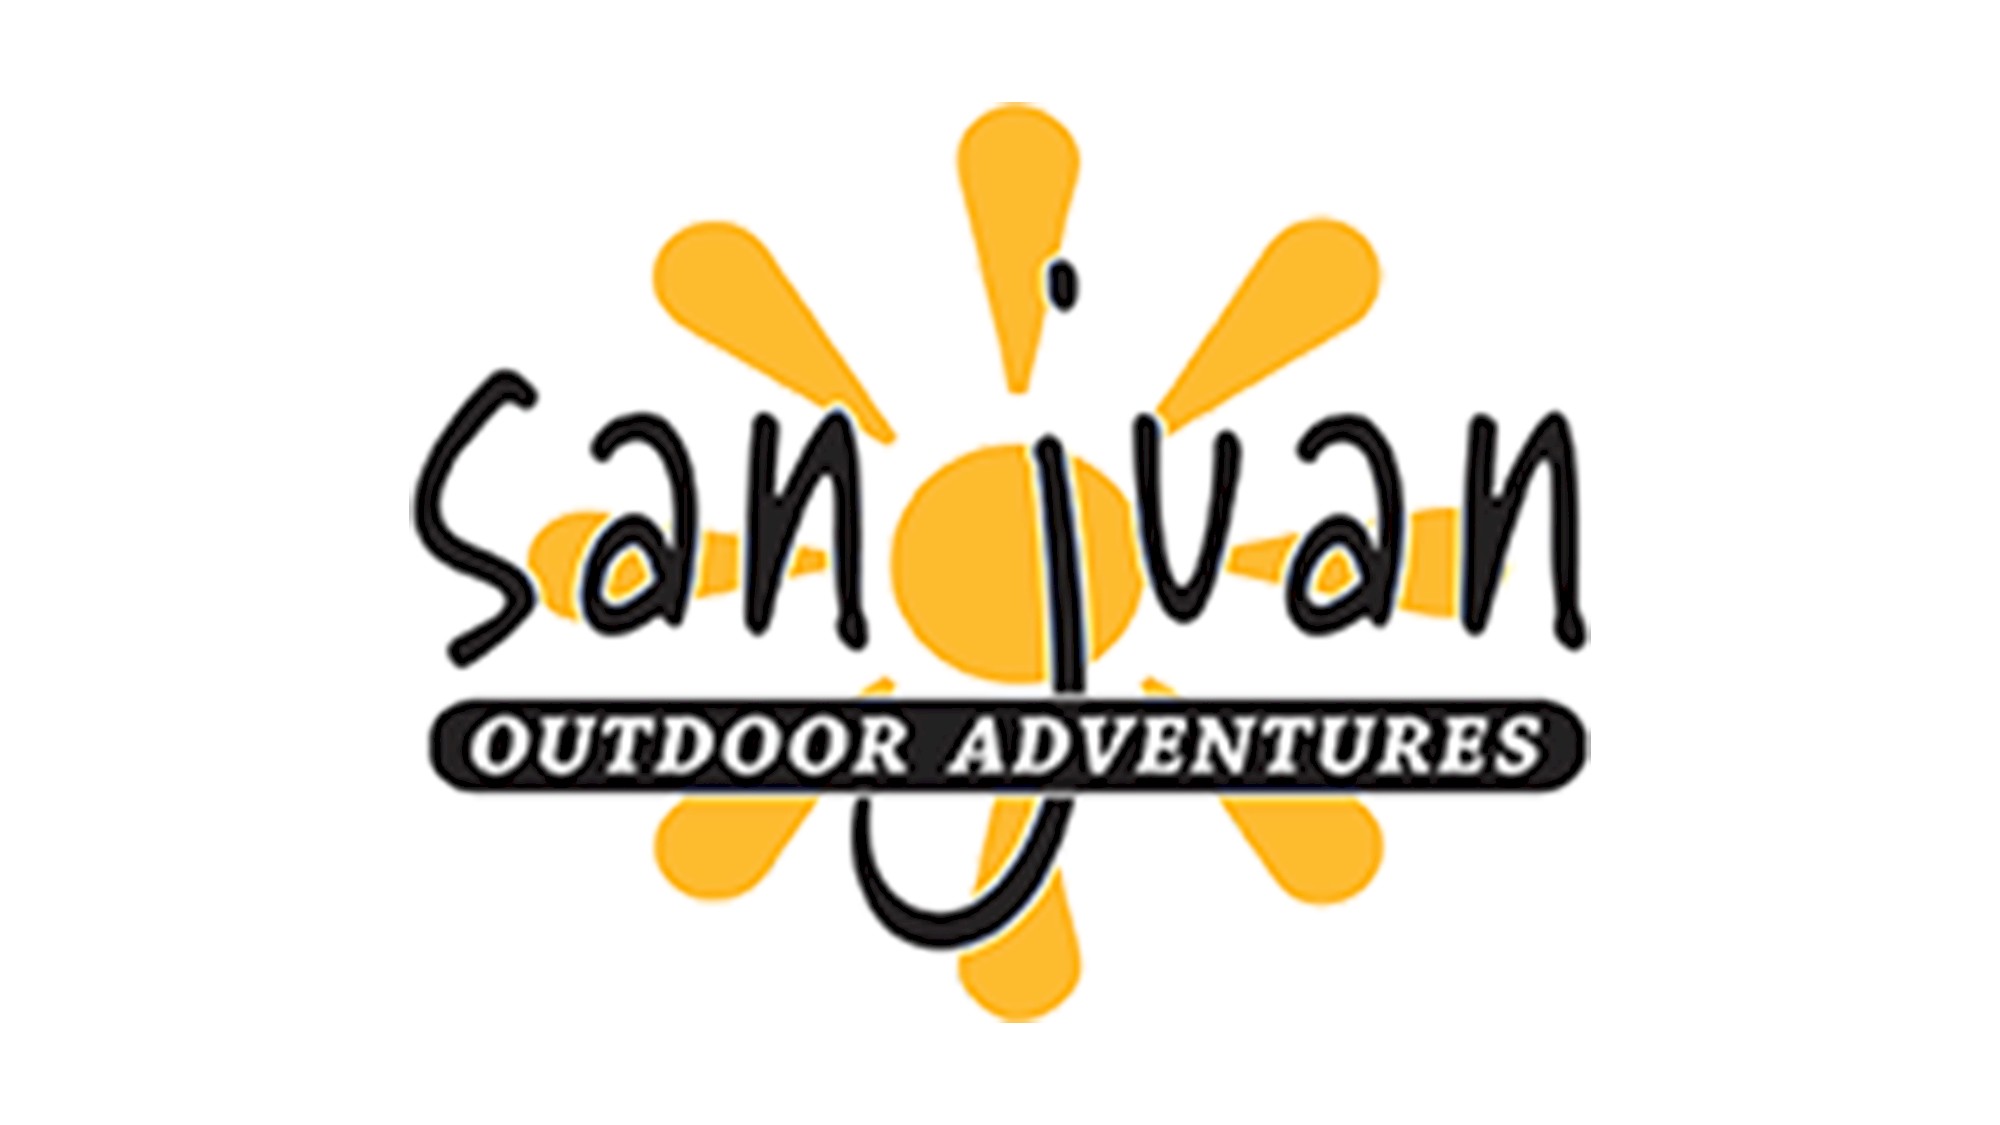 San Juan Outdoor Adventures